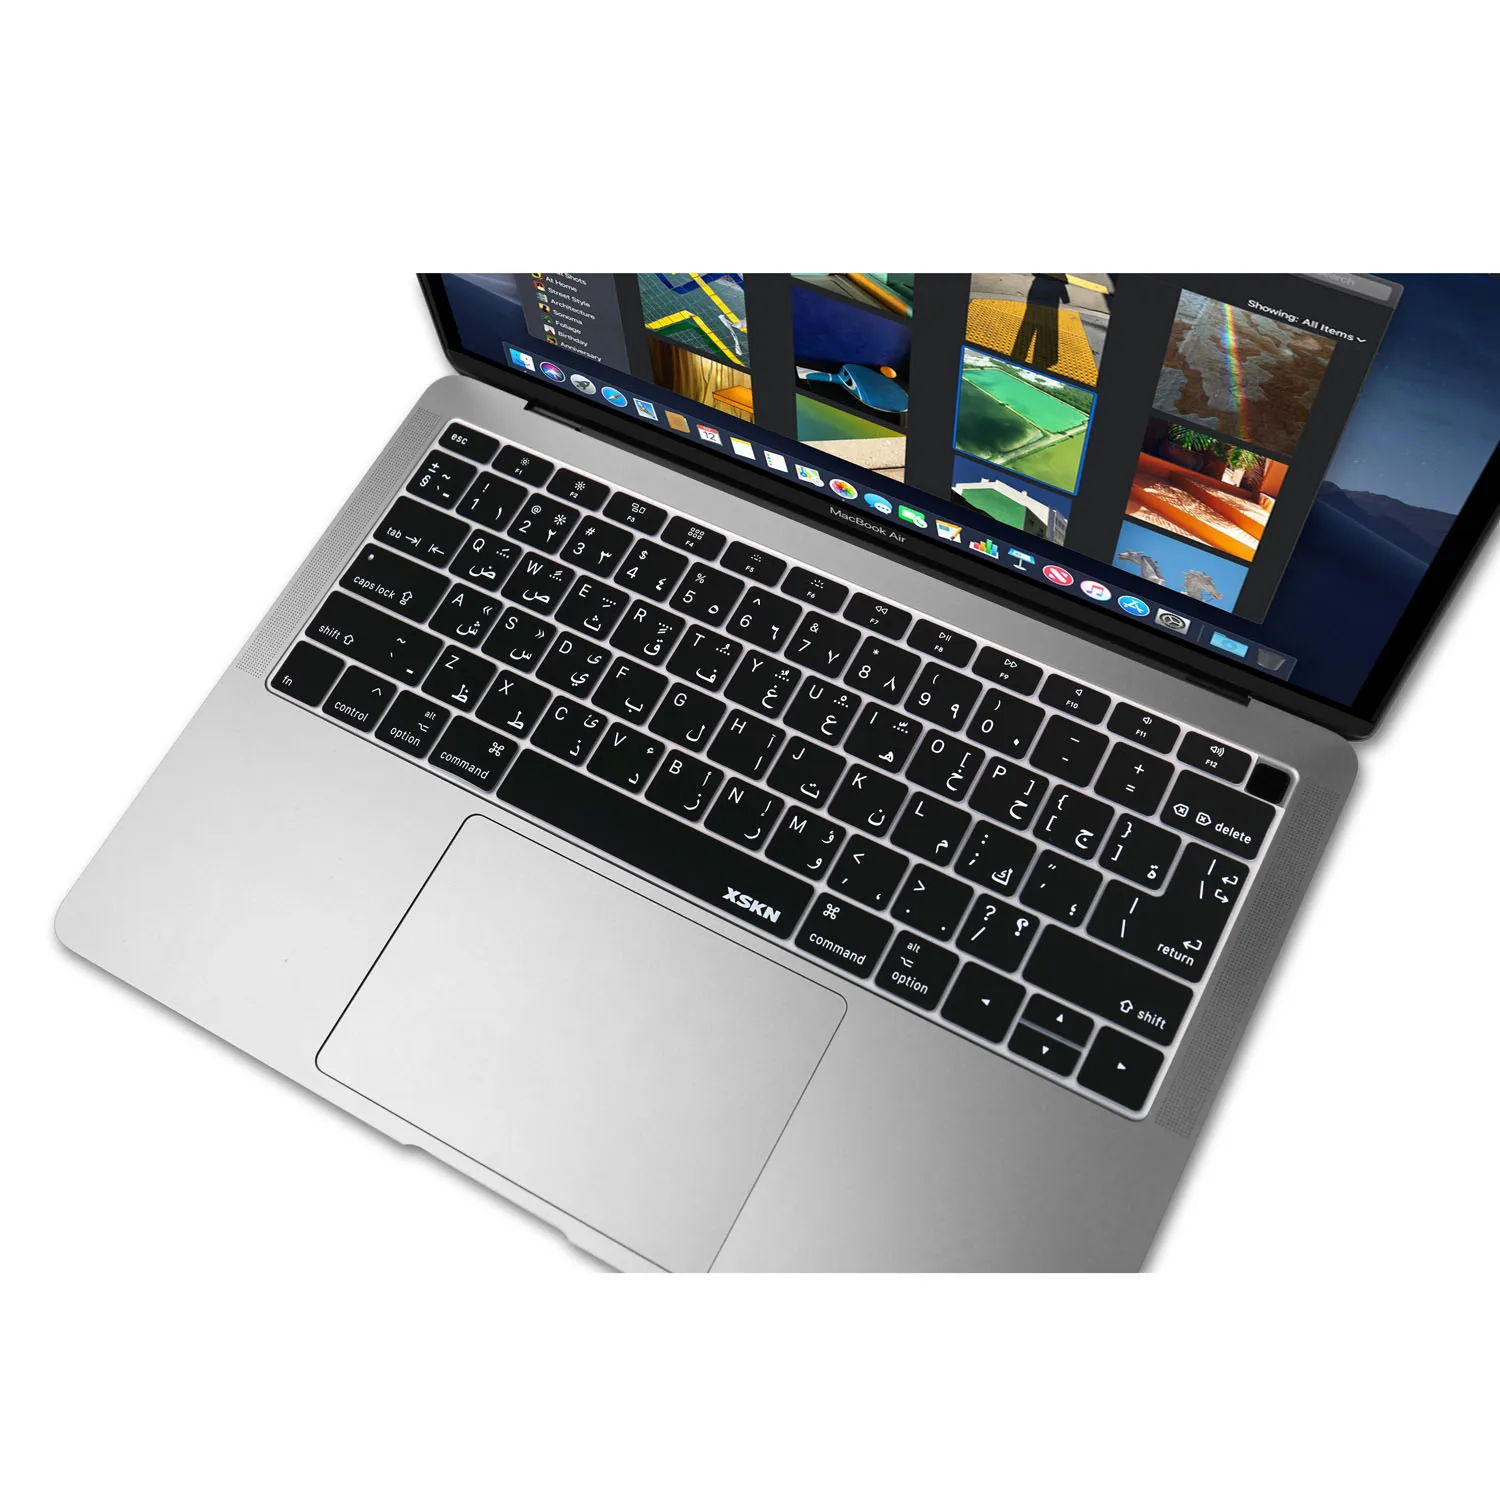 XSKN США ЕС макет арабский язык черный силиконовый чехол для клавиатуры кожи для нового MacBook Air 1" с сенсорным ID A1932